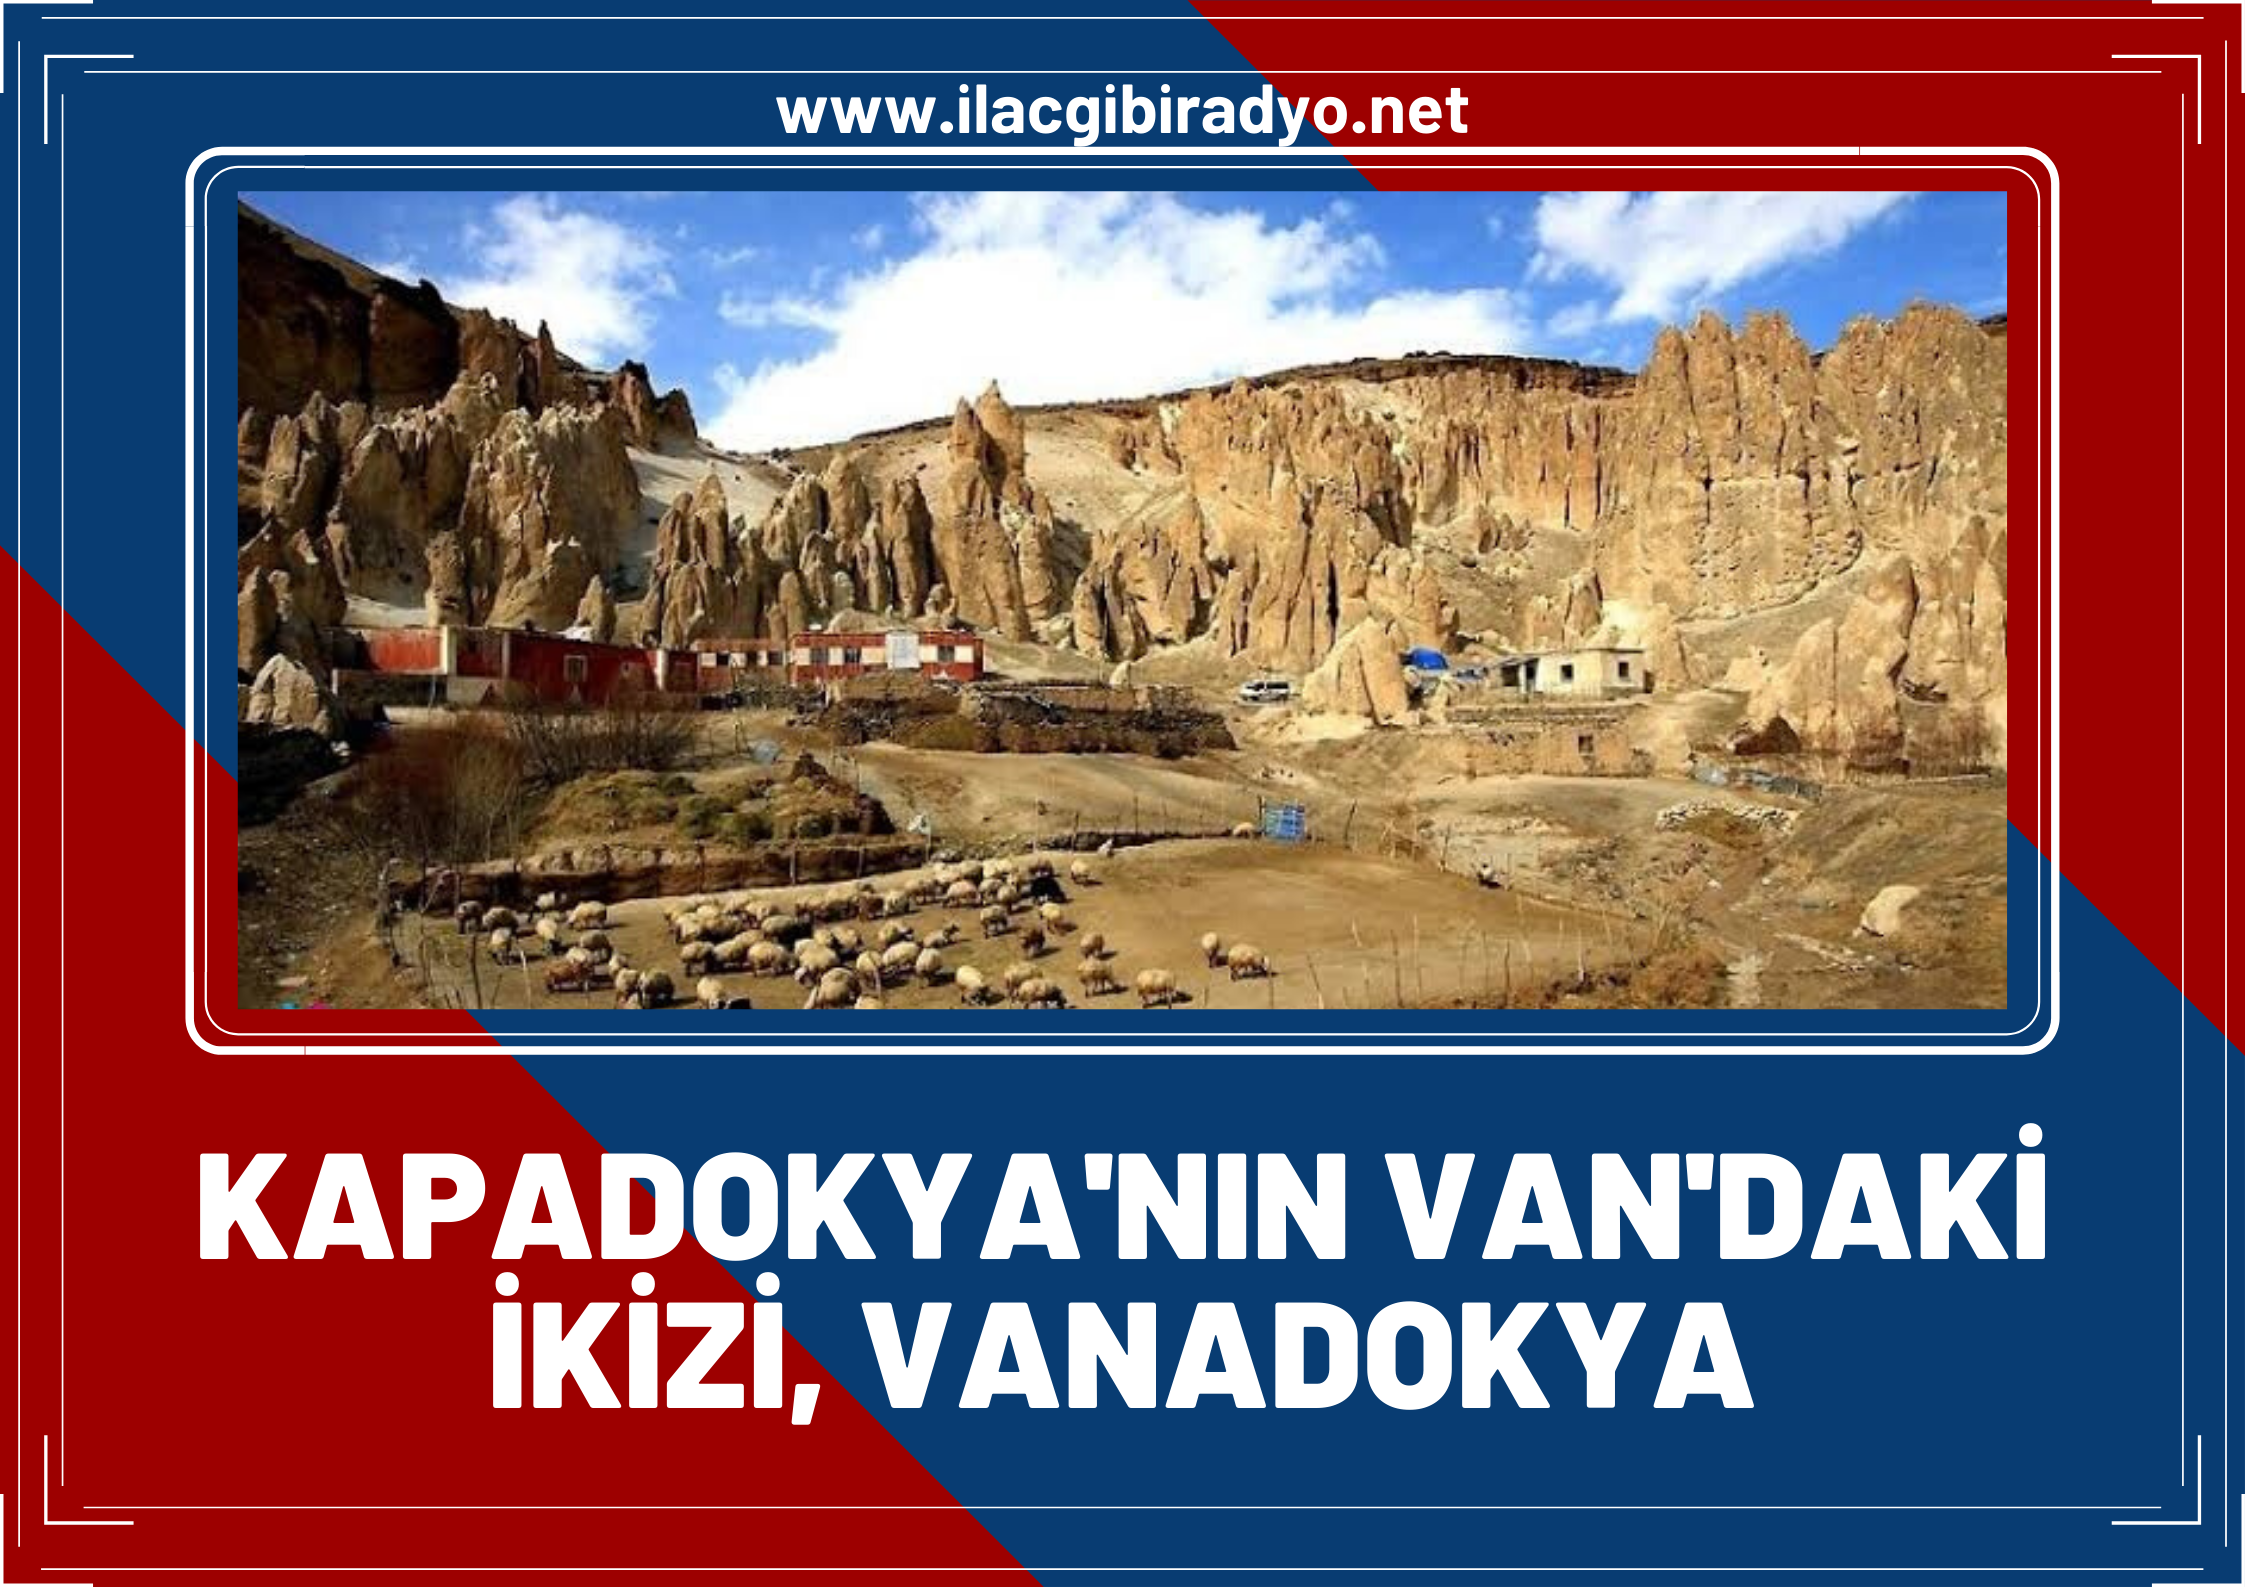 DW Başkale'nin Kofiraz'ını belgesel yaptı: Vanadokya, Kapadokya’nın Van'daki ikizi